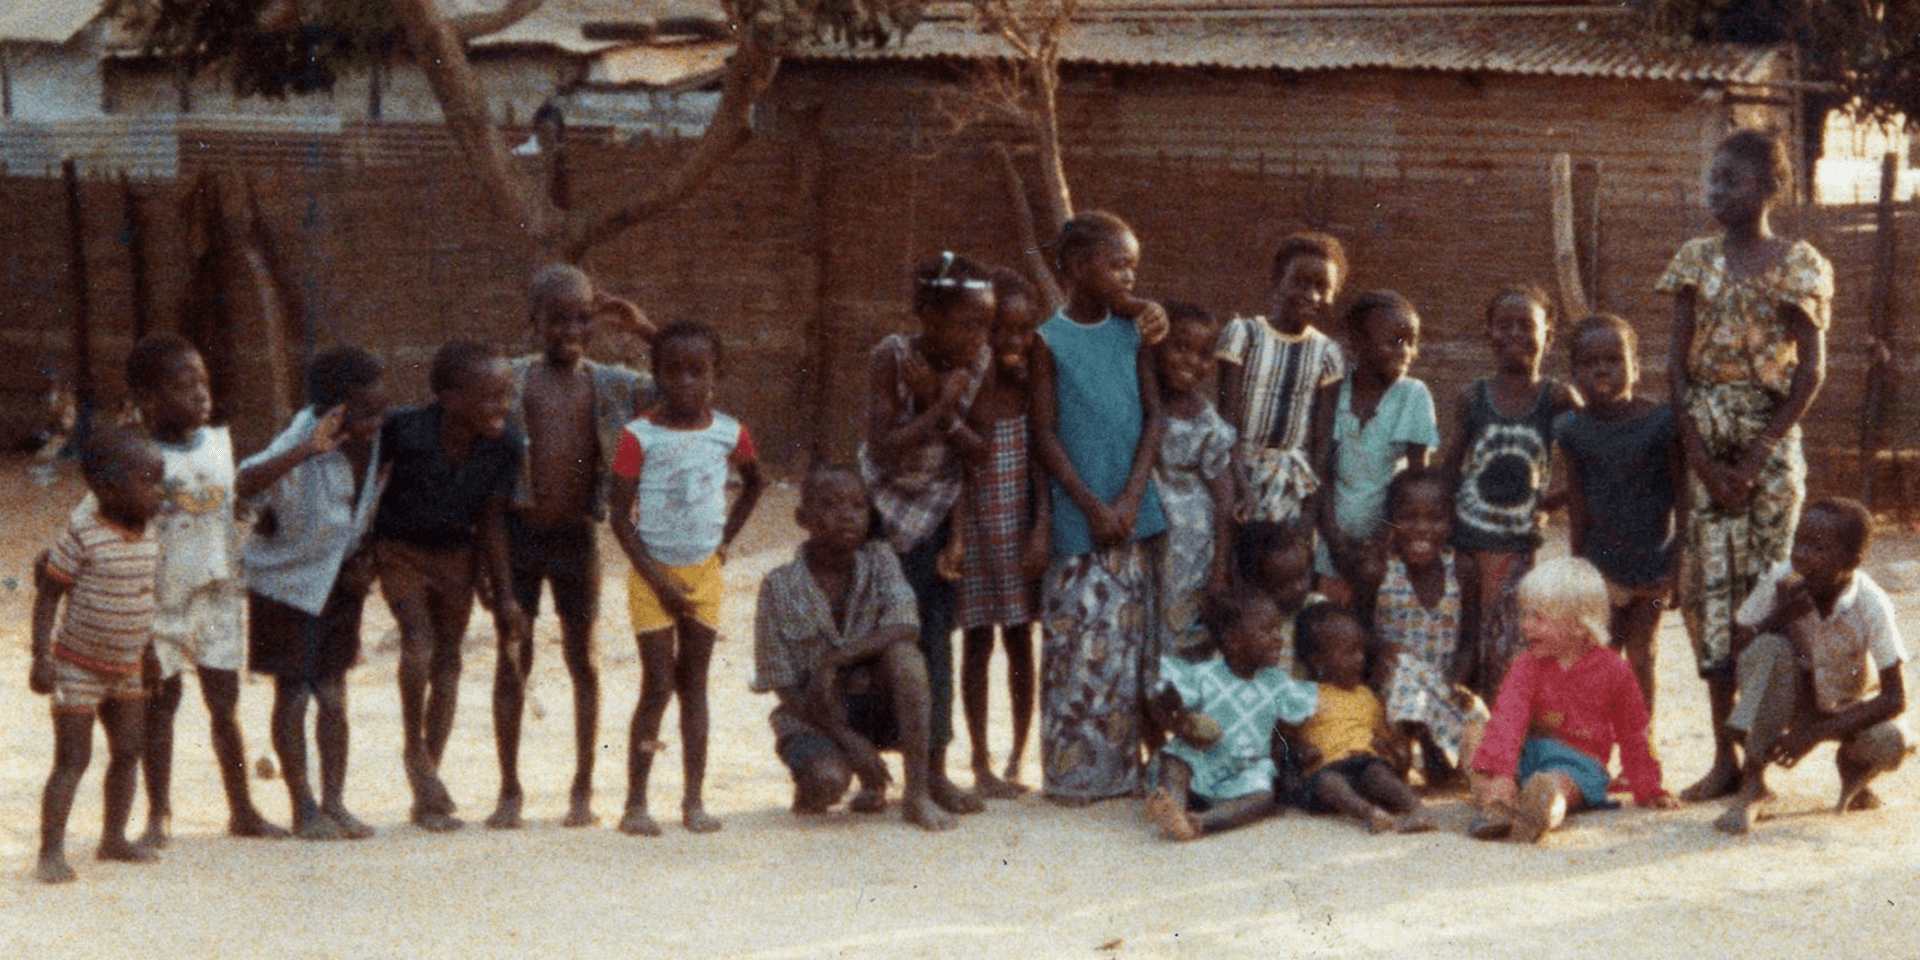 Benny tillsammans med sina lekkamrater under uppväxtåren i Gambia.